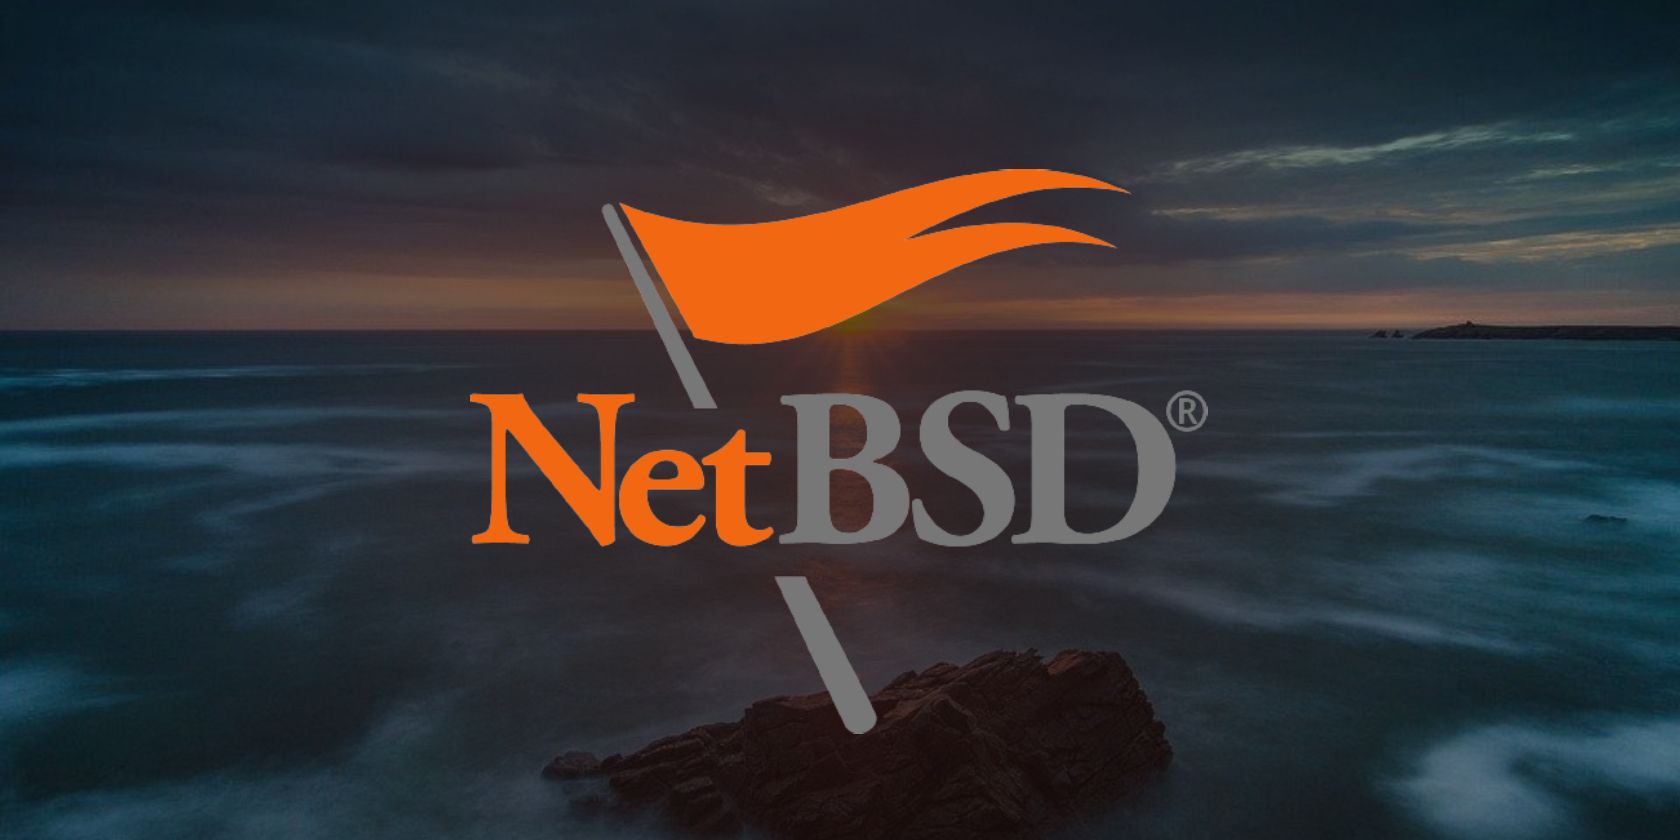  NetBSD